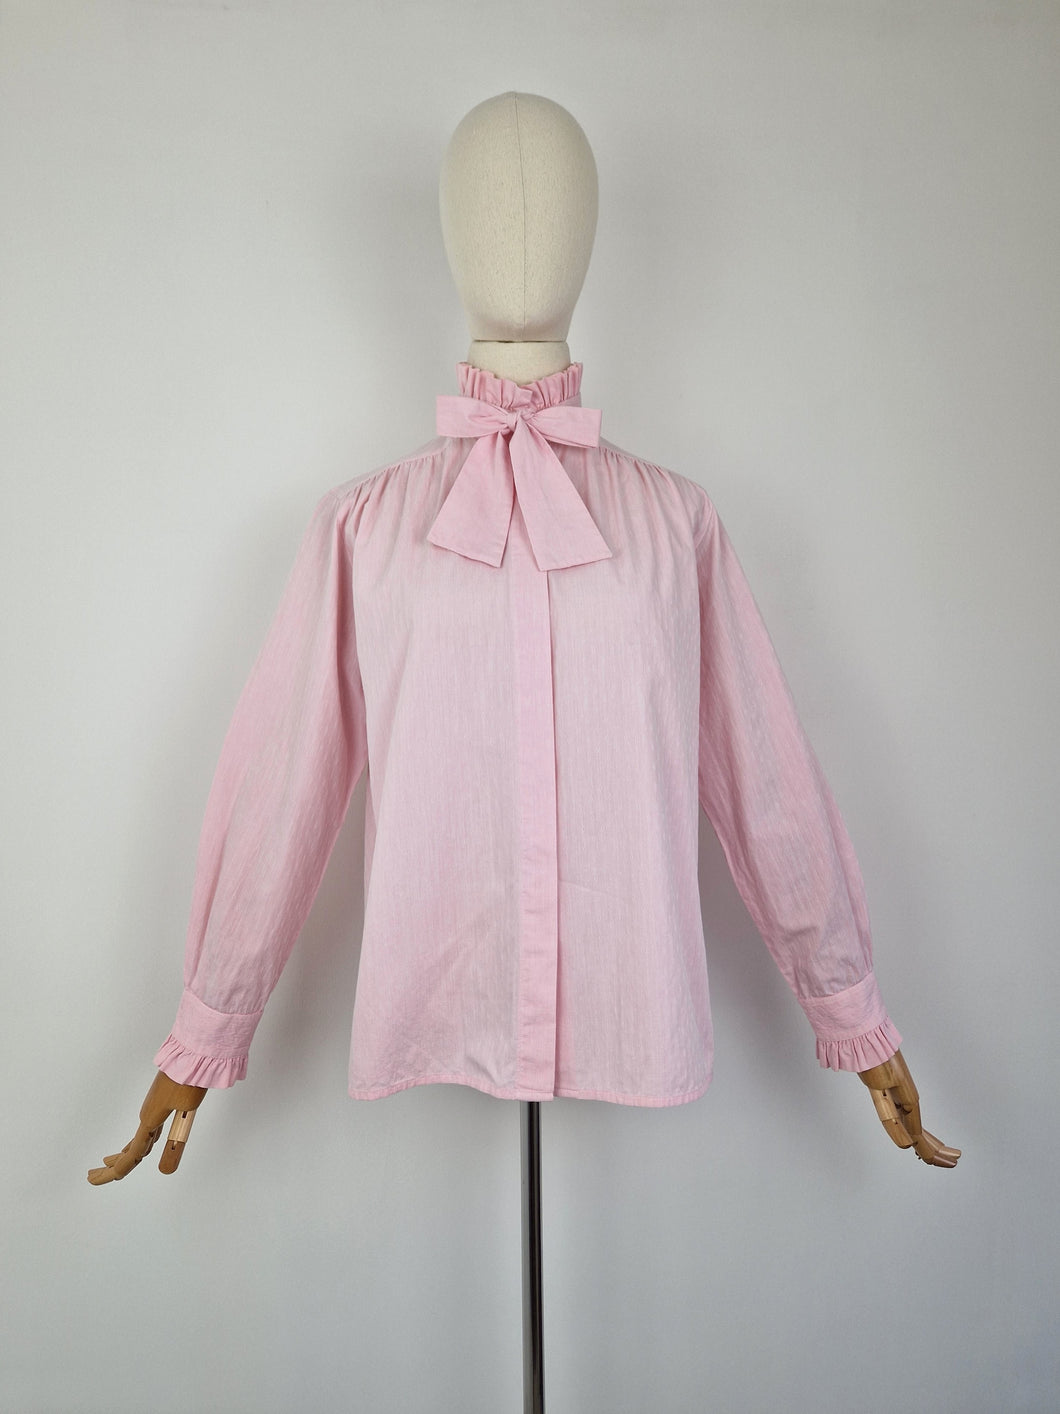 Vintage pink pie crust blouse